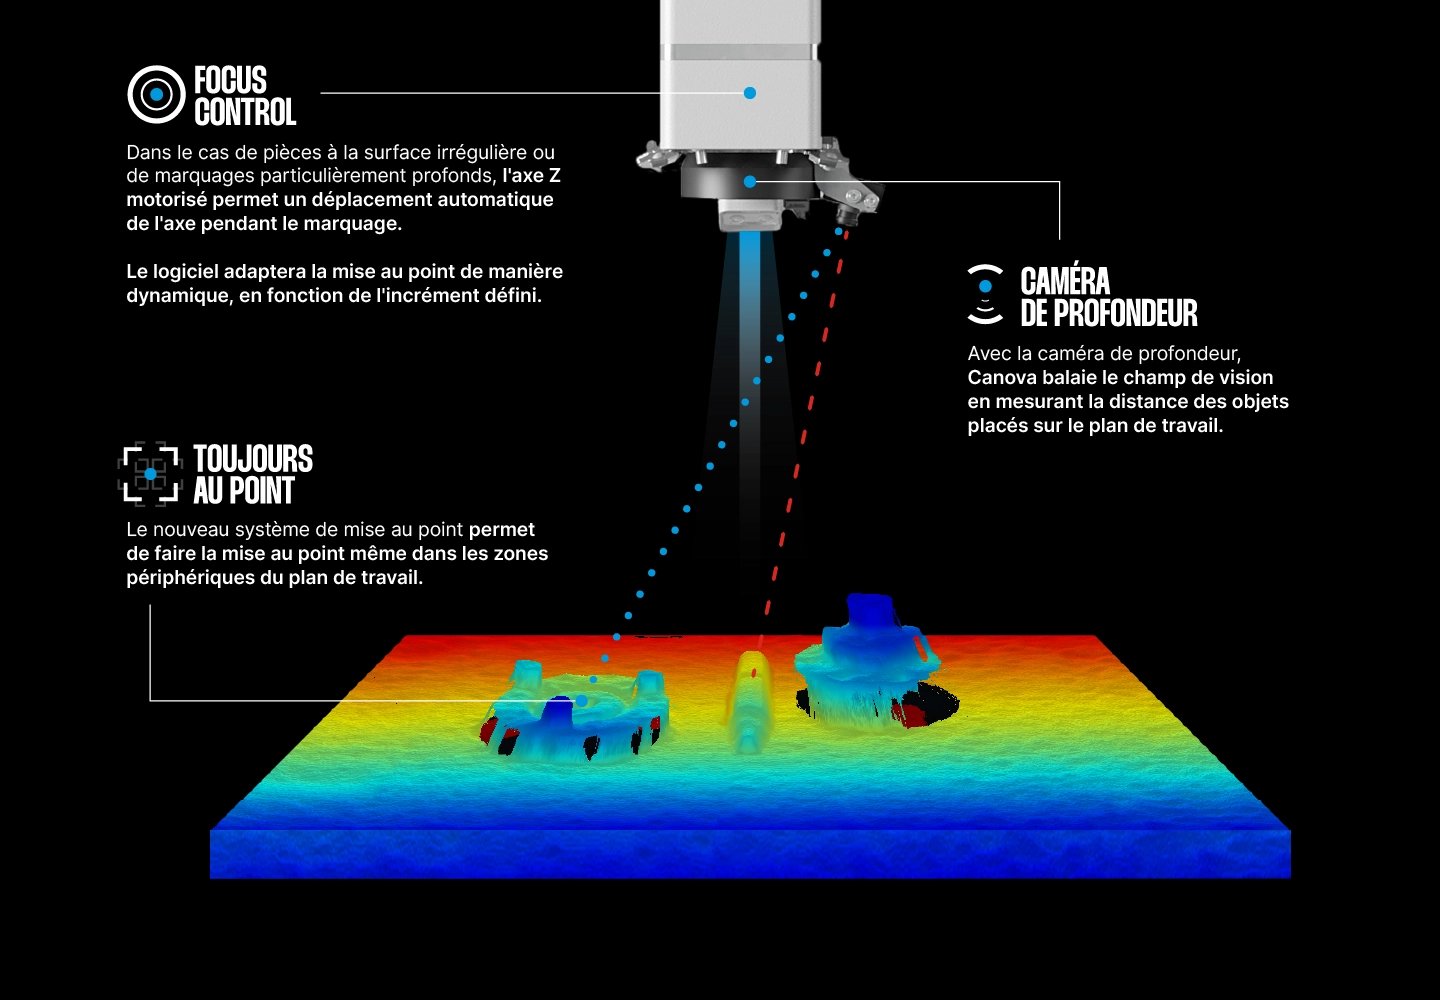 Le système de mise au point automatique de la machine de marquage laser Canova d’Orotig permet de gérer automatiquement la mise au point sur la pièce à marquer, même dans les zones périphériques du plan de travail.